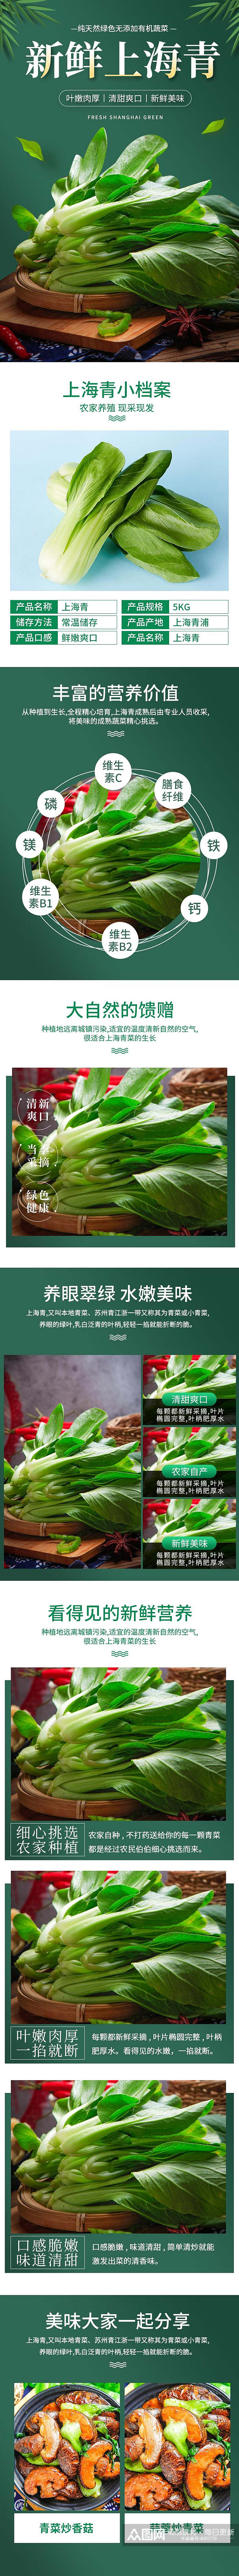 上海青蔬菜手机版详情页素材